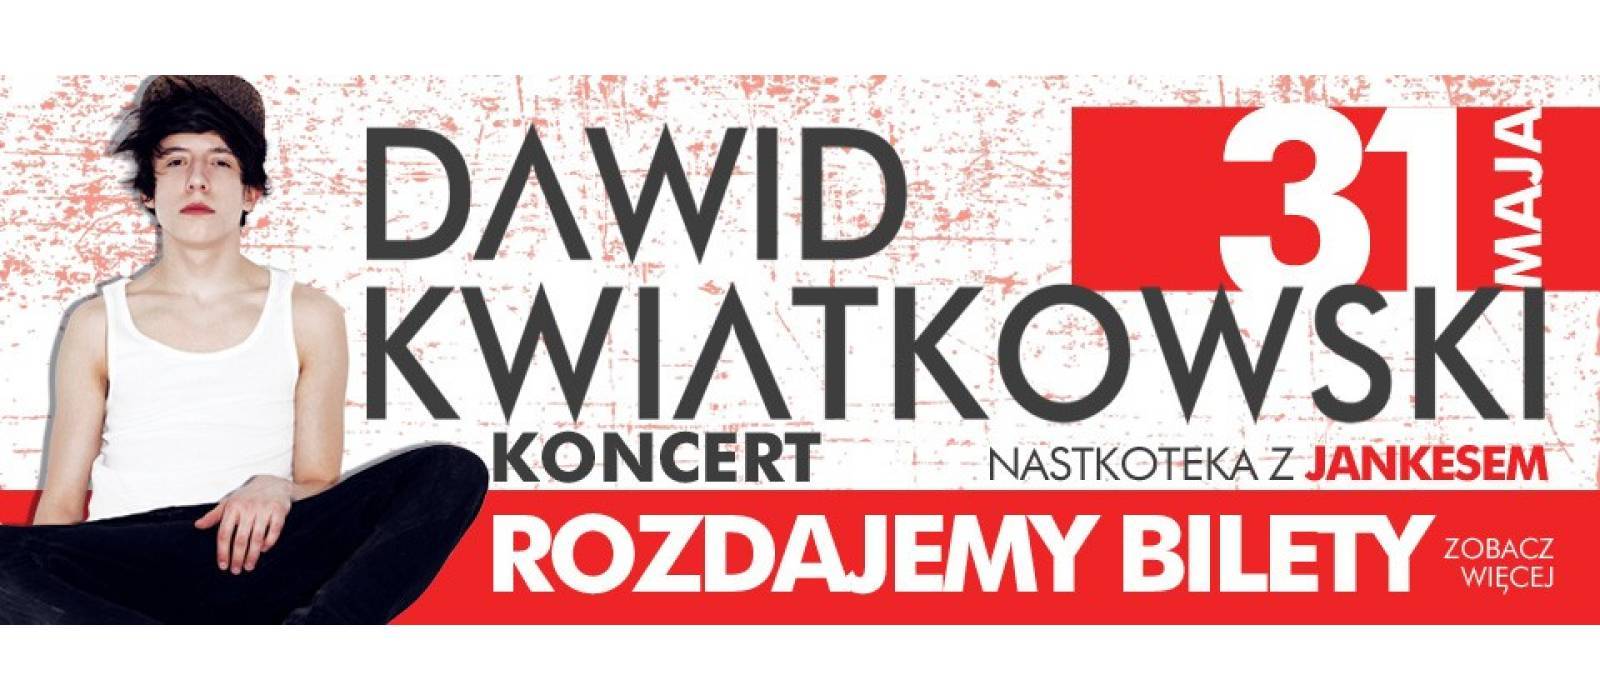 Dawid Kwiatkowski - koncert. Rozdajemy bilety!  - 1